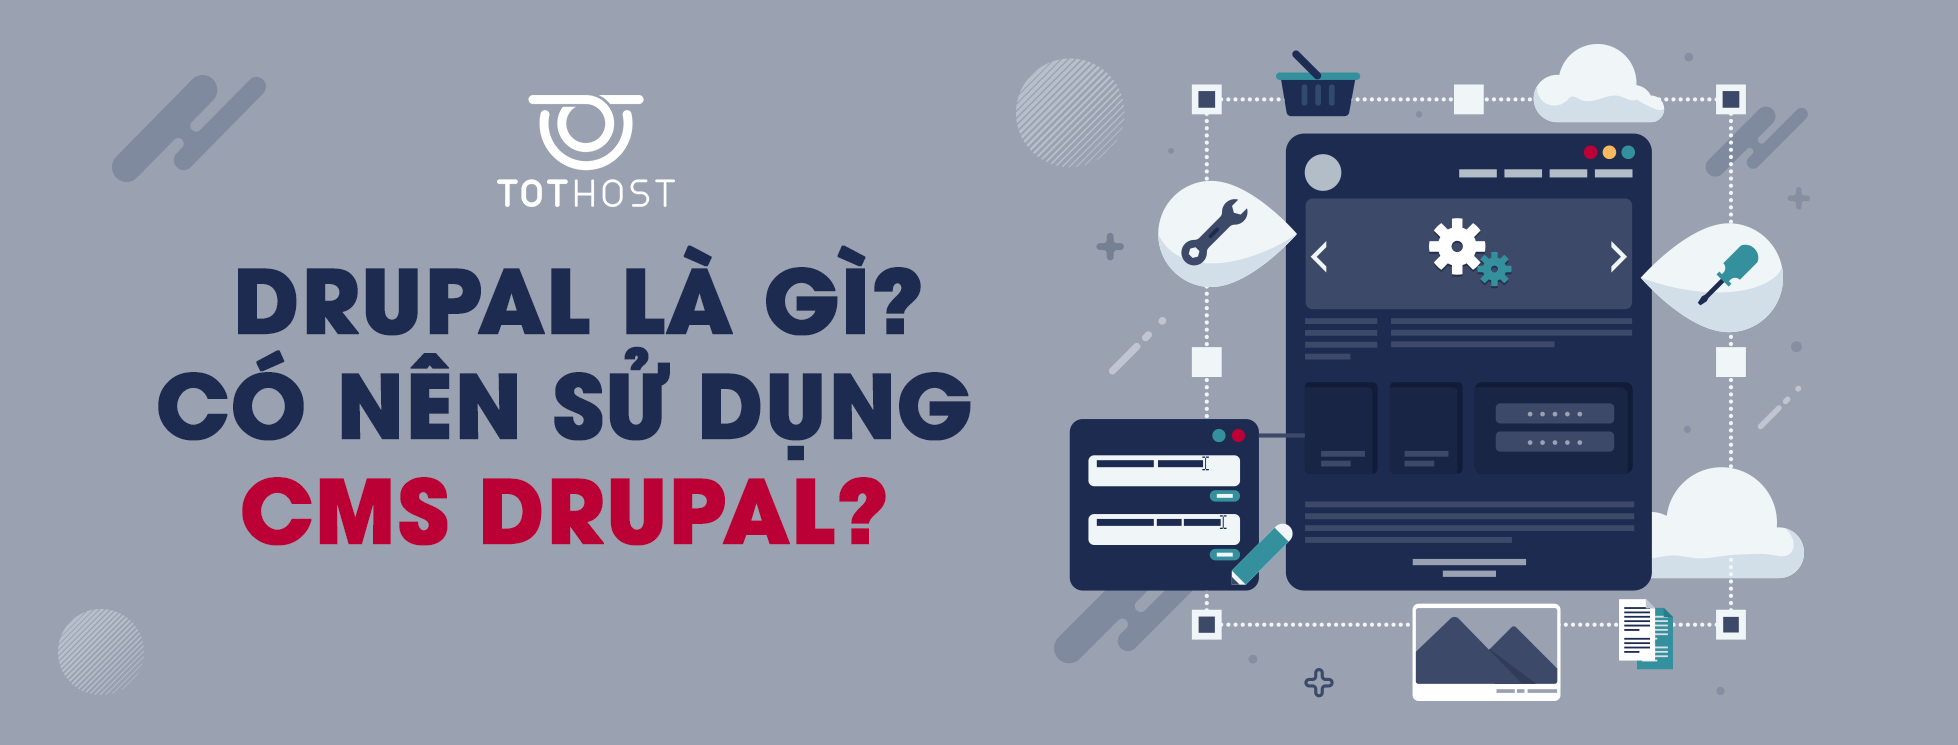 Drupal là gì?